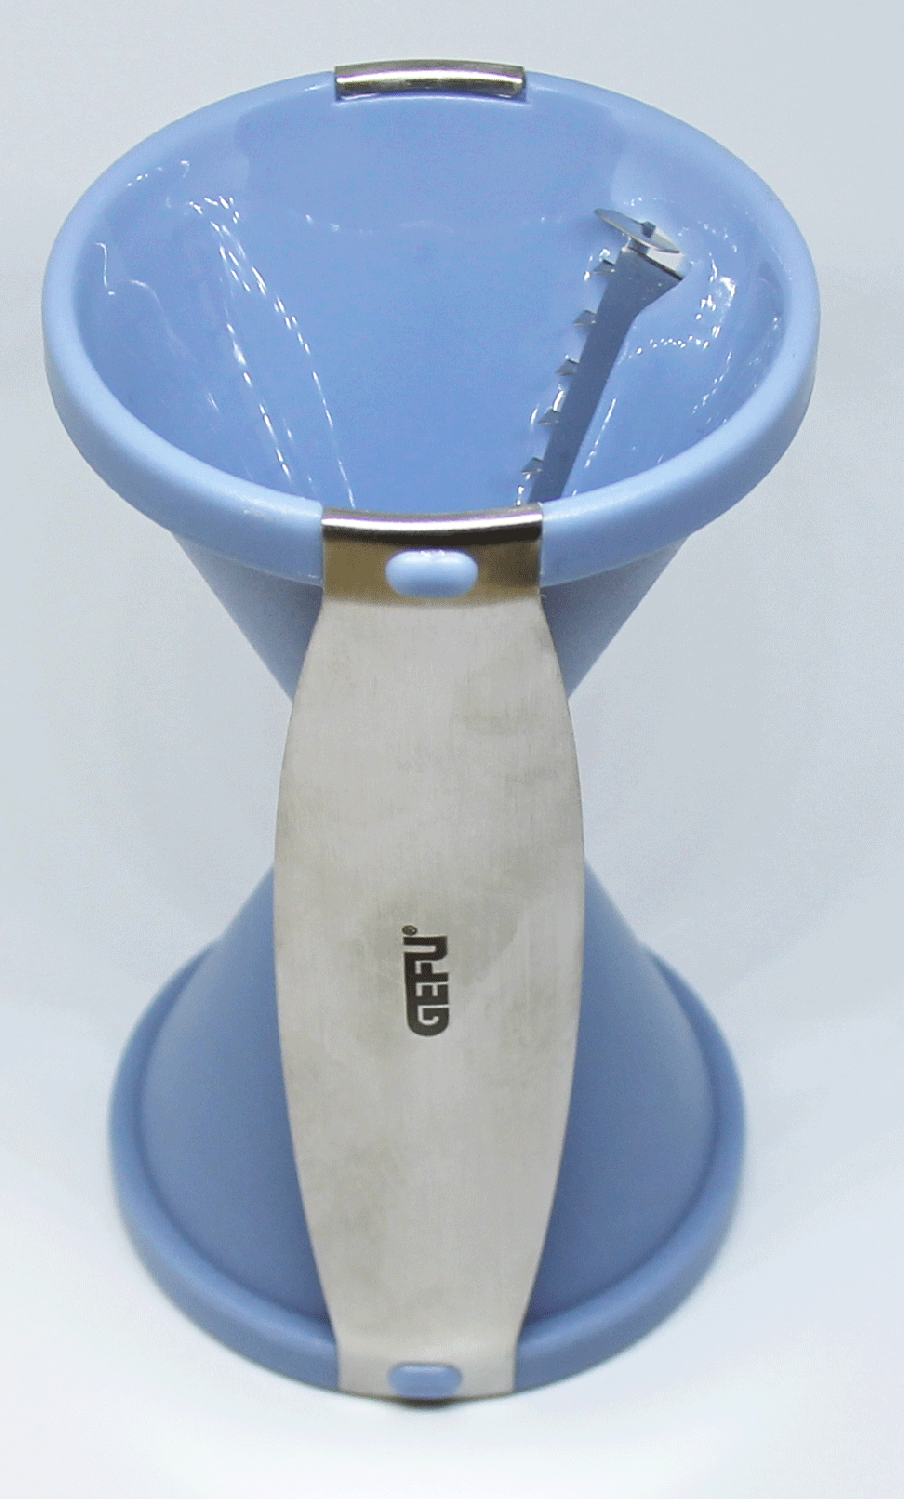 GEFU Spiralschneider Spirelli in blau bei KochForm